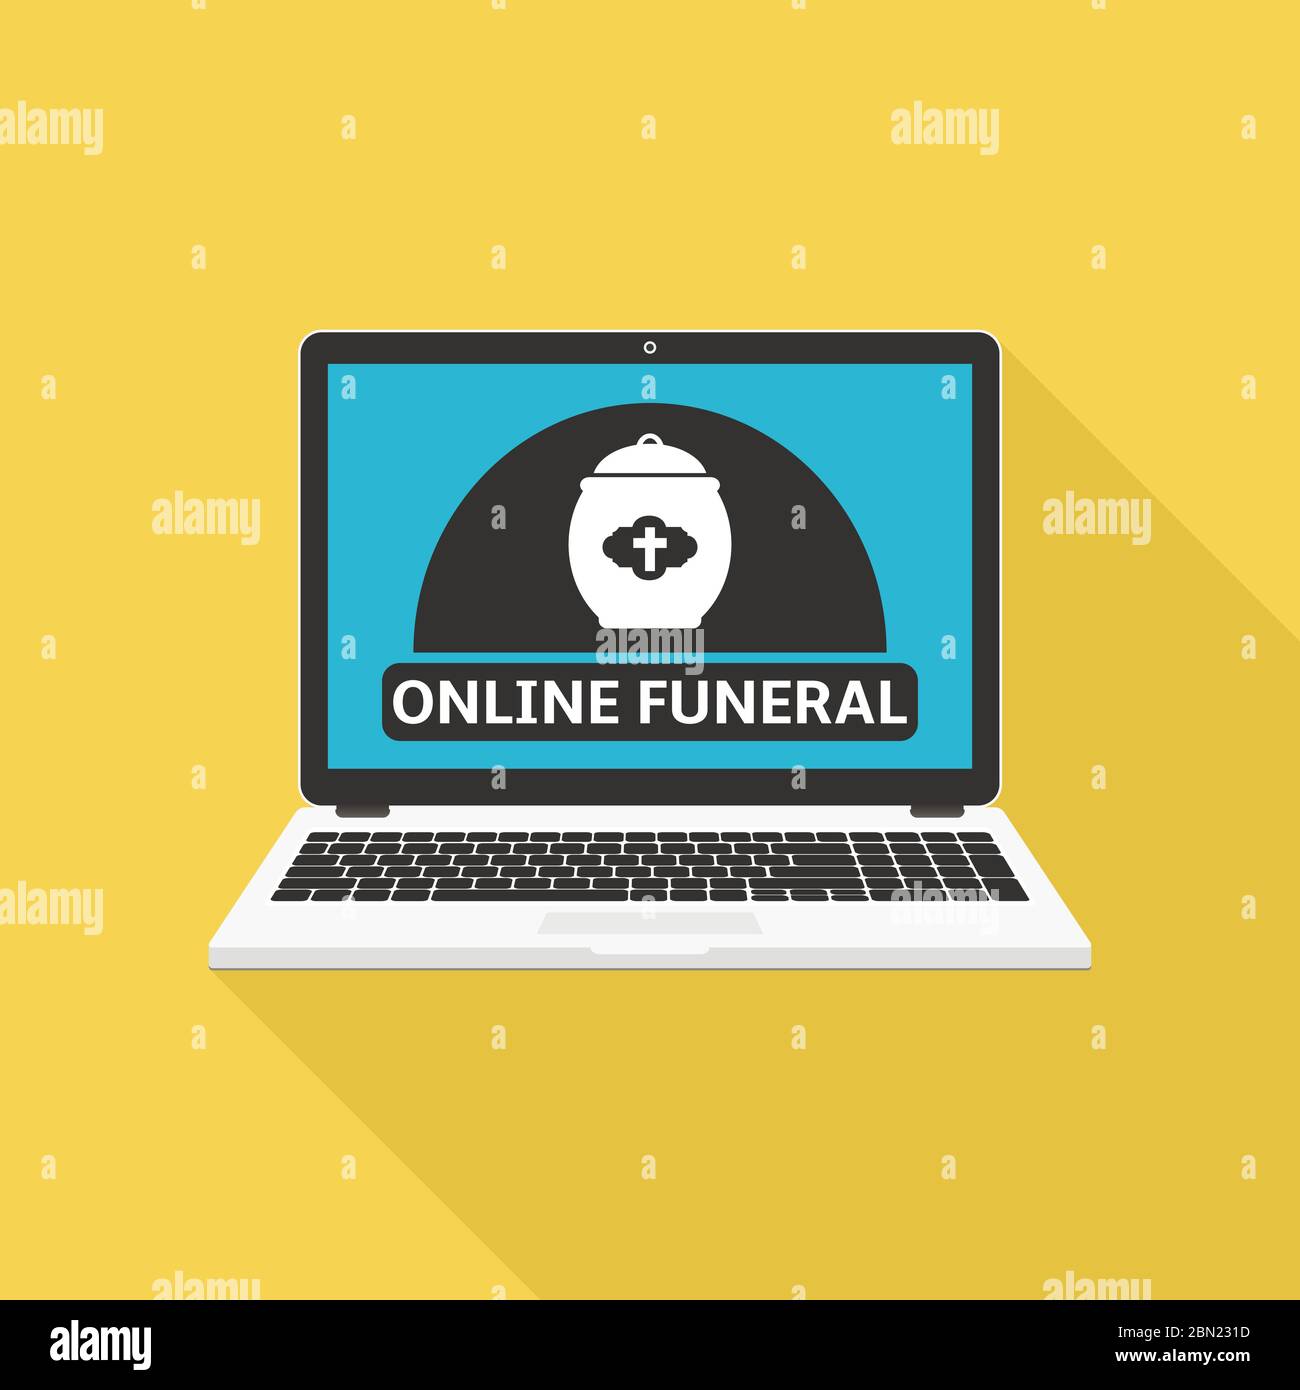 Online-Beerdigung Service auf Laptop-Bildschirm, flaches Design Vektor-Illustration Stock Vektor